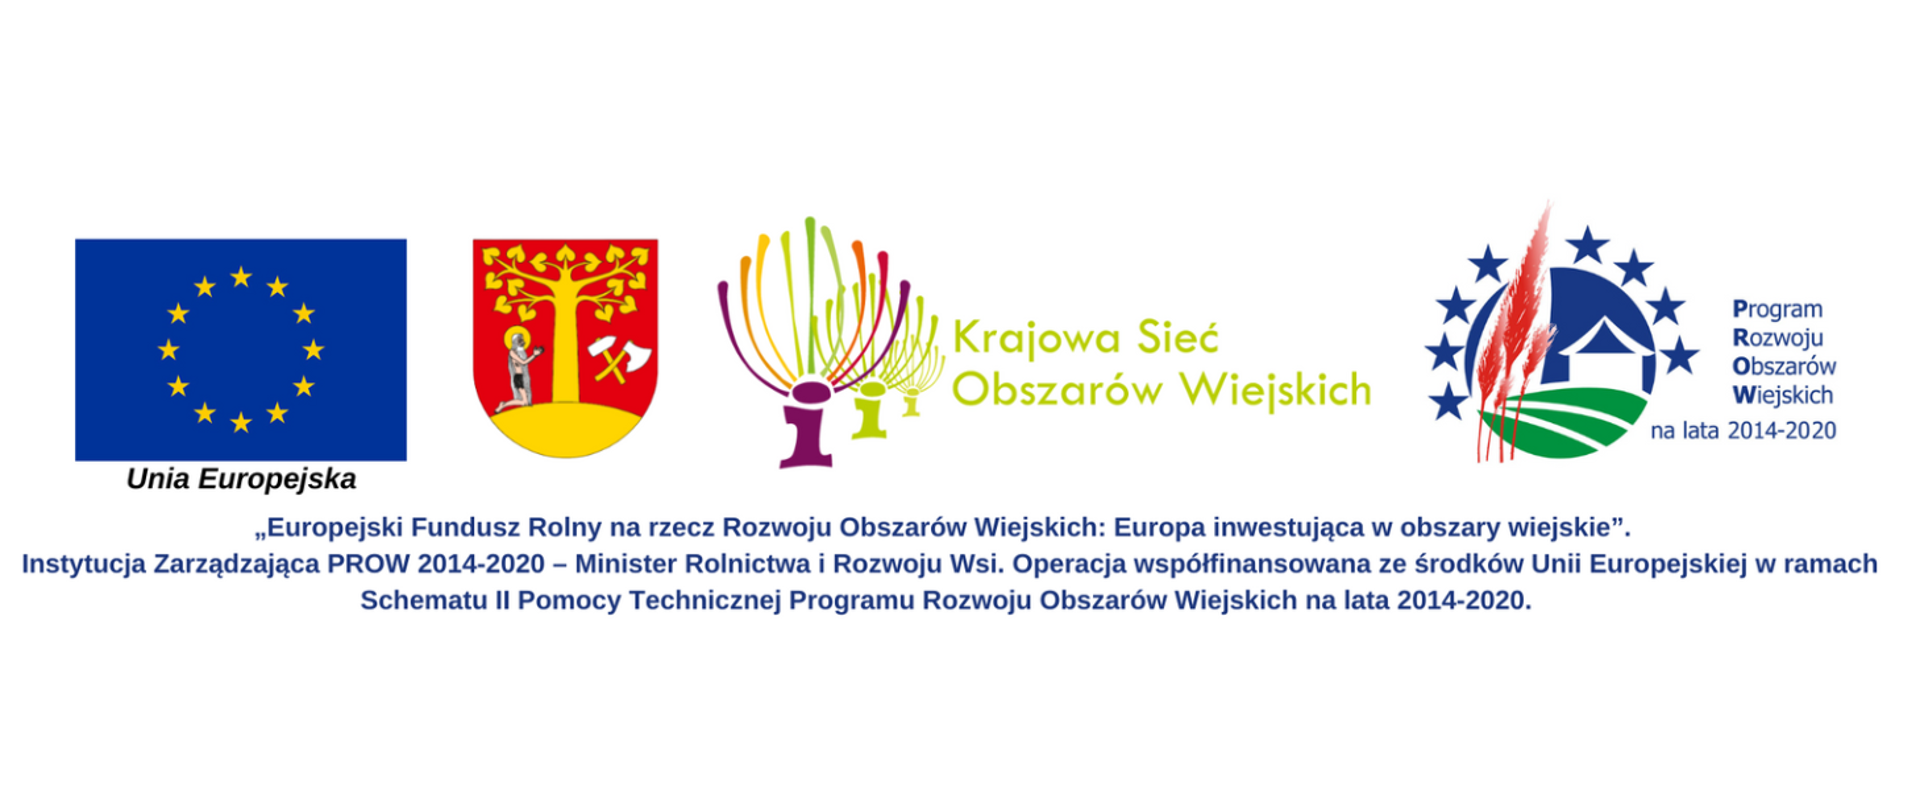 Loga "Unia Europejska", Herb Gminy Stryszów, Logo Krajowa Sieć Obszarów Wiejskich, Logo Program Obszarów Wiejskich na lata 2014-2020